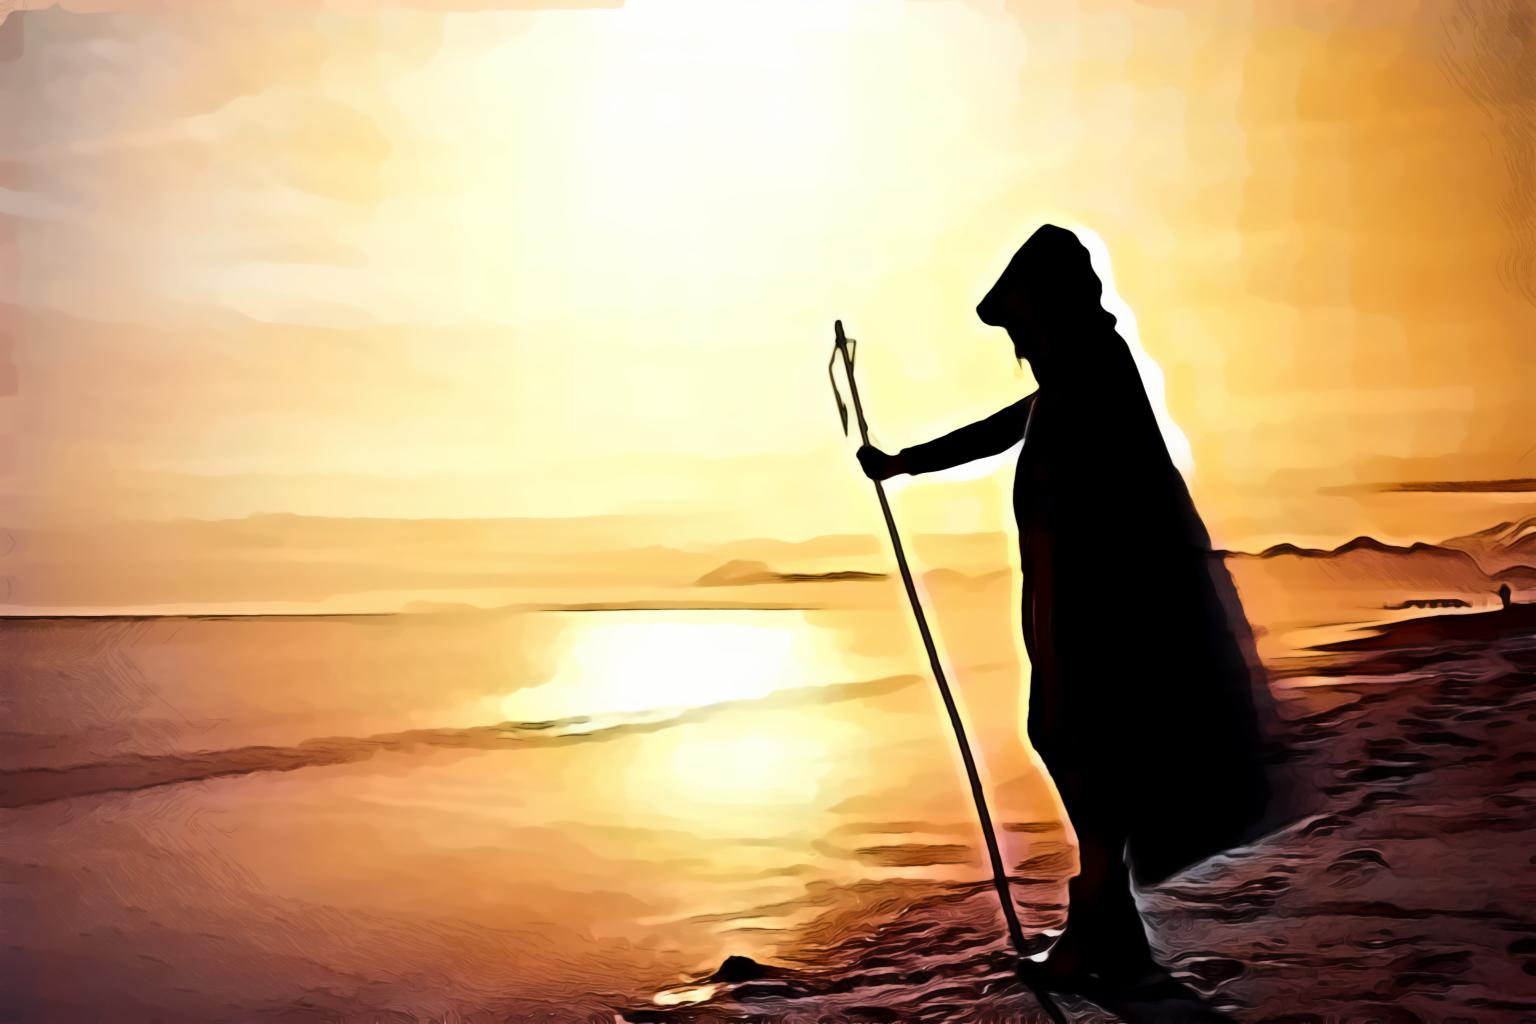 Silhouette of person standing near calm sea